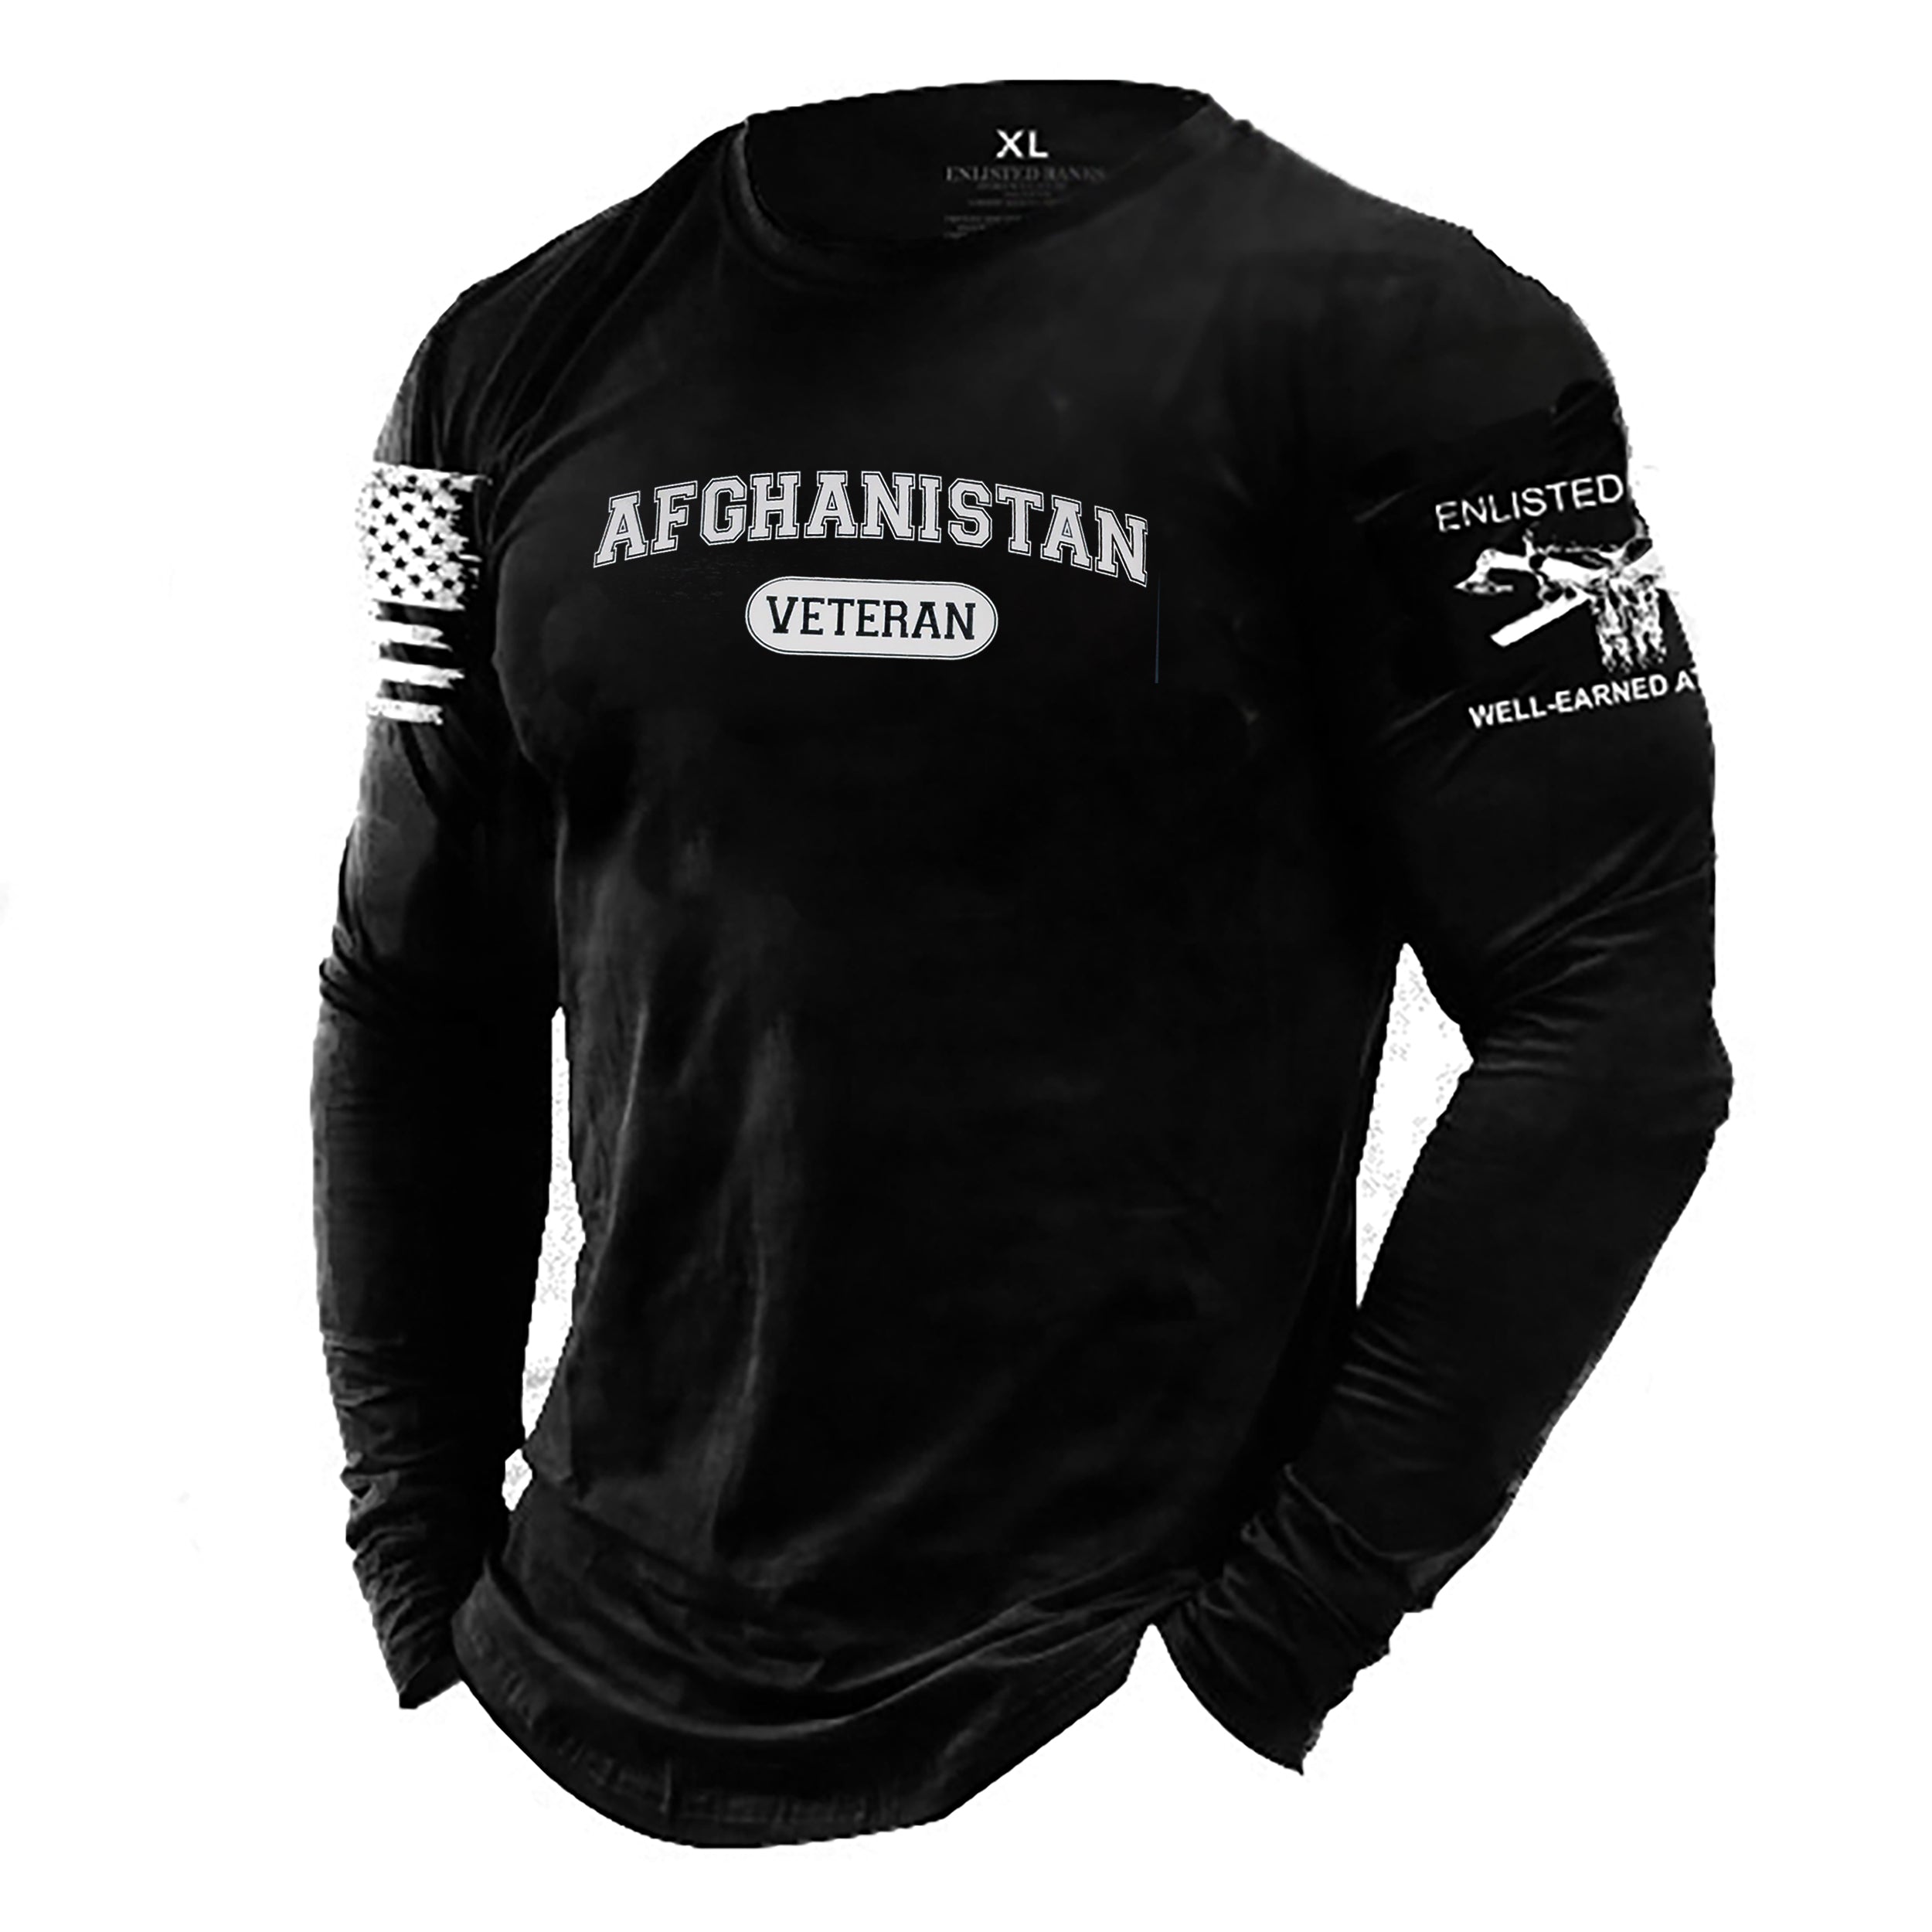 AFGHANISTAN VETERAN, Long Sleeve T-Shirt